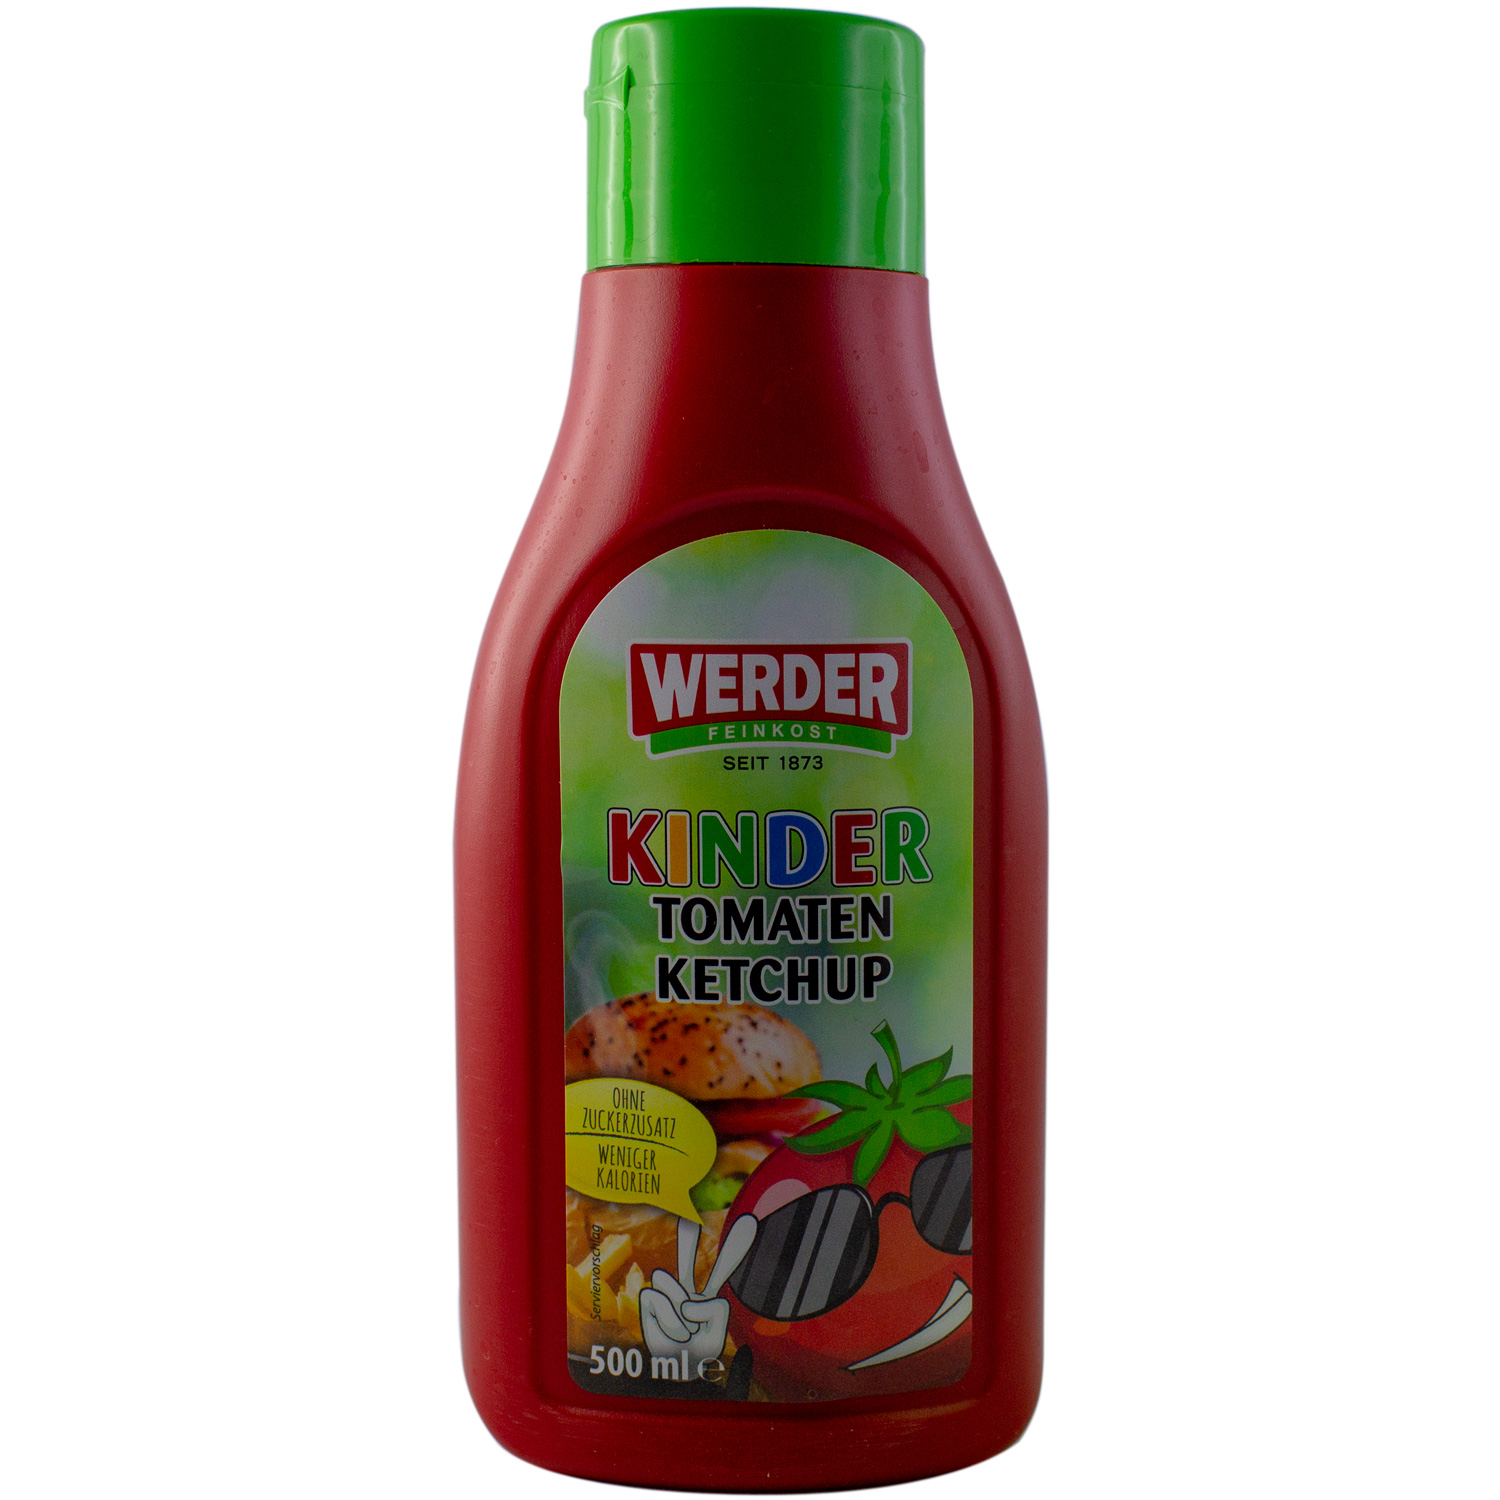 Ossikiste.de | Werder Kinder Tomaten Ketchup 500 ml | online kaufen